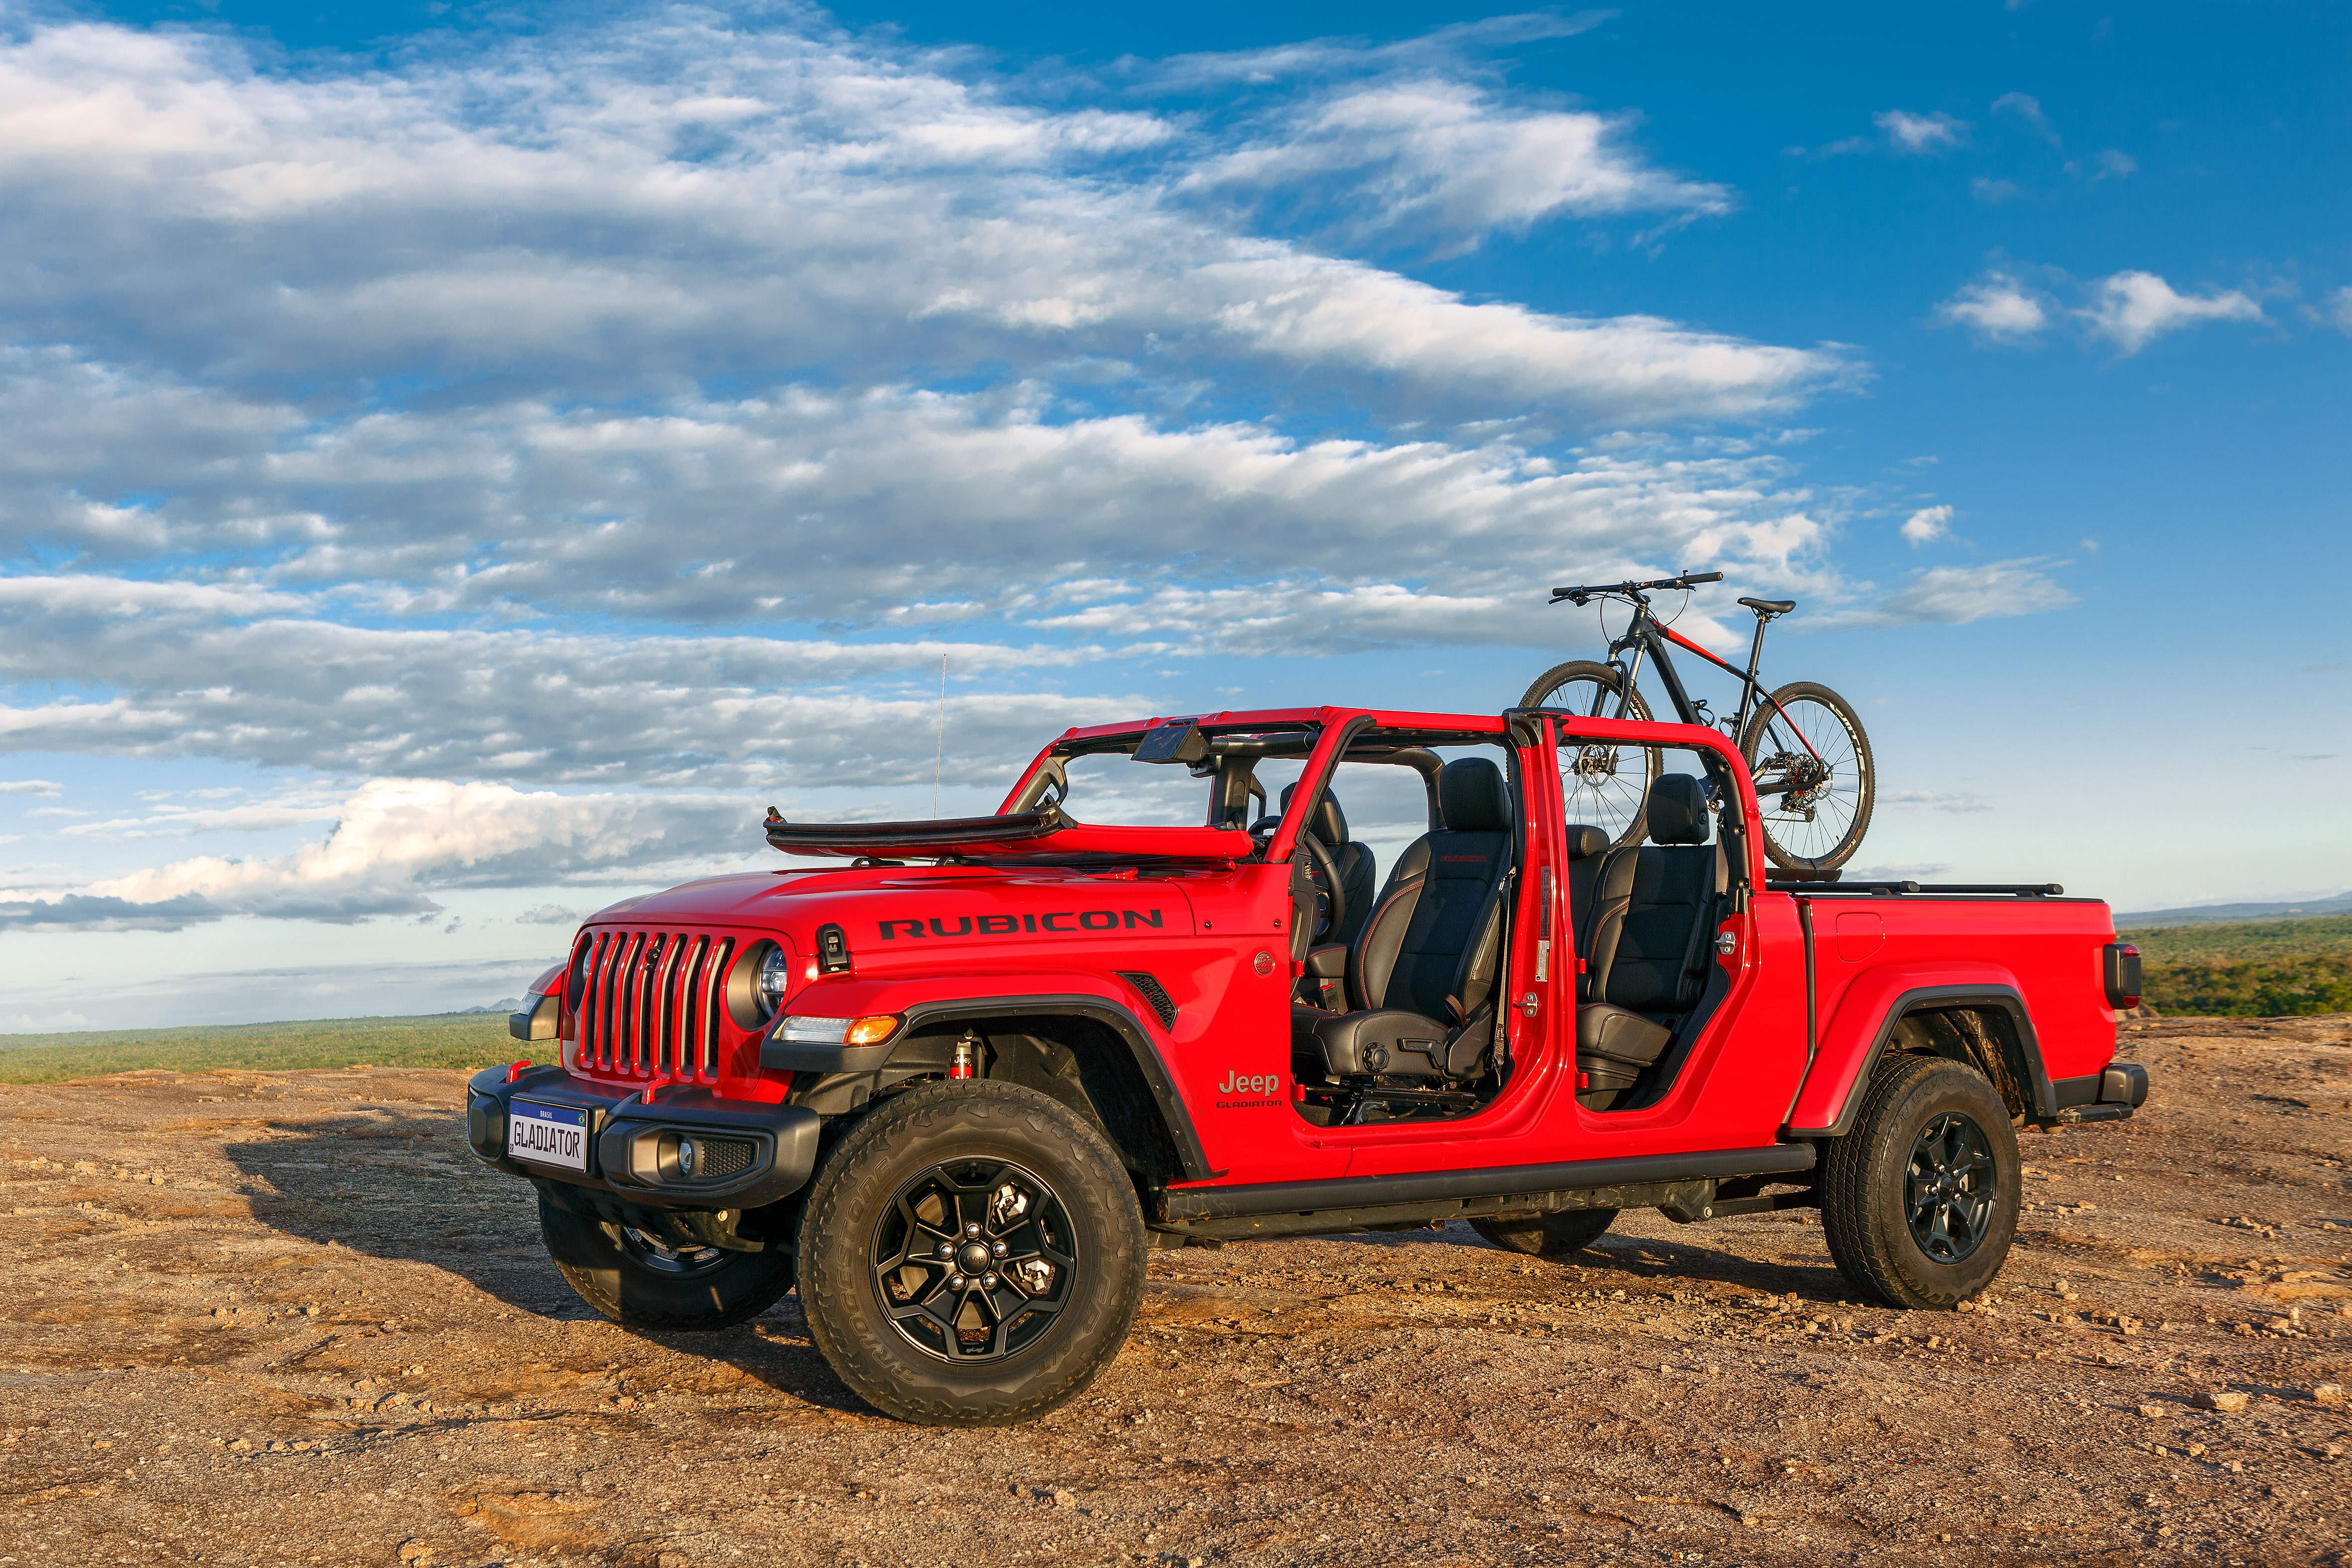 Jeep Gladiator Rubicon 2022 vermelho de frente desmontado com uma bicicleta na caçamba.